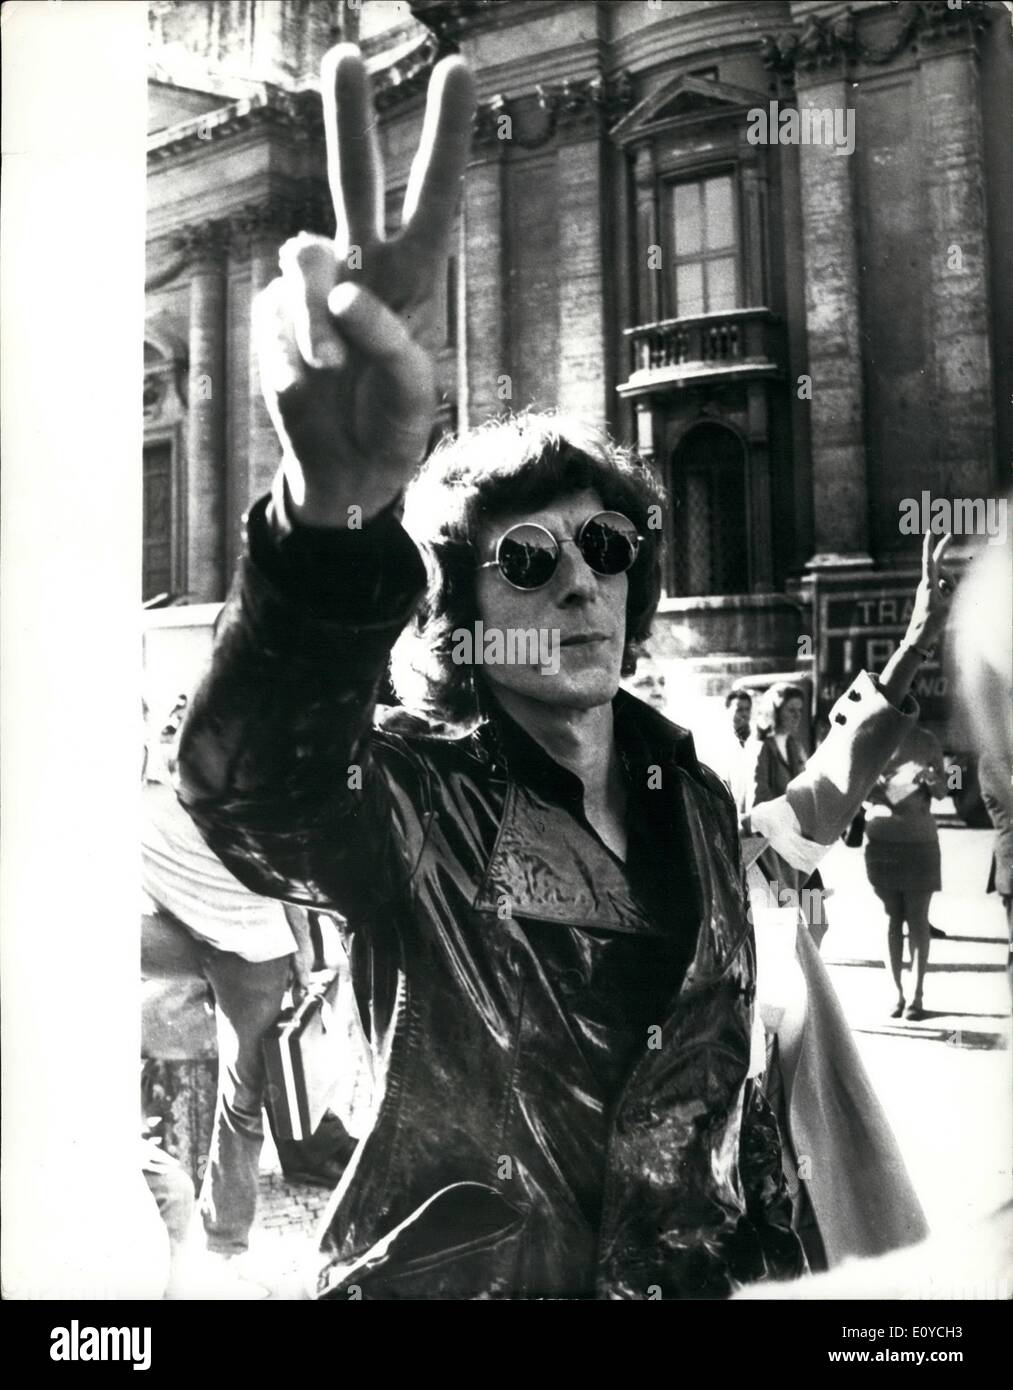 11 novembre 1969 - Paul Getti rejoint le fils d'Awti-War Parade à Rome - J. Paul Getty Jr., fils du milliardaire du pétrole, photographié lors de la manifestation qui a eu lieu à Rome le samedi à l'appui de la paix de Washington de mars. Banque D'Images